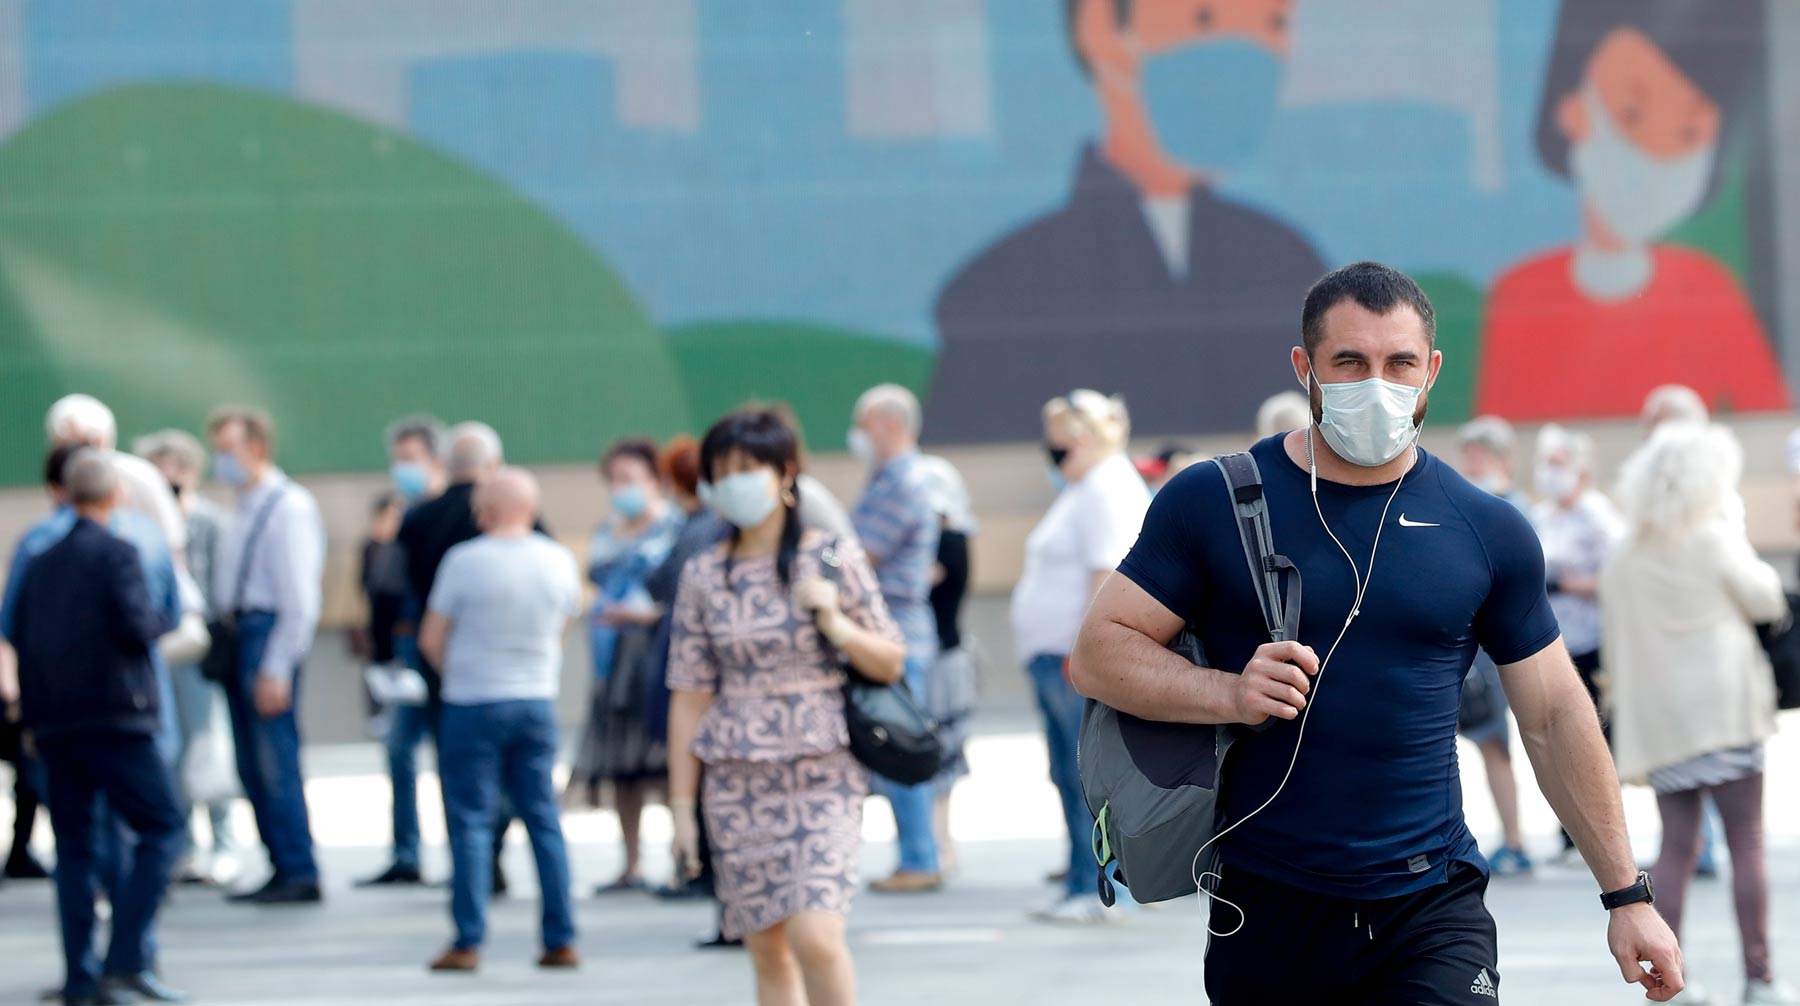 Мэр столицы заявил о формировании у 60% москвичей коллективного иммунитета к коронавирусной инфекции Фото: © Global Look Press / PPI